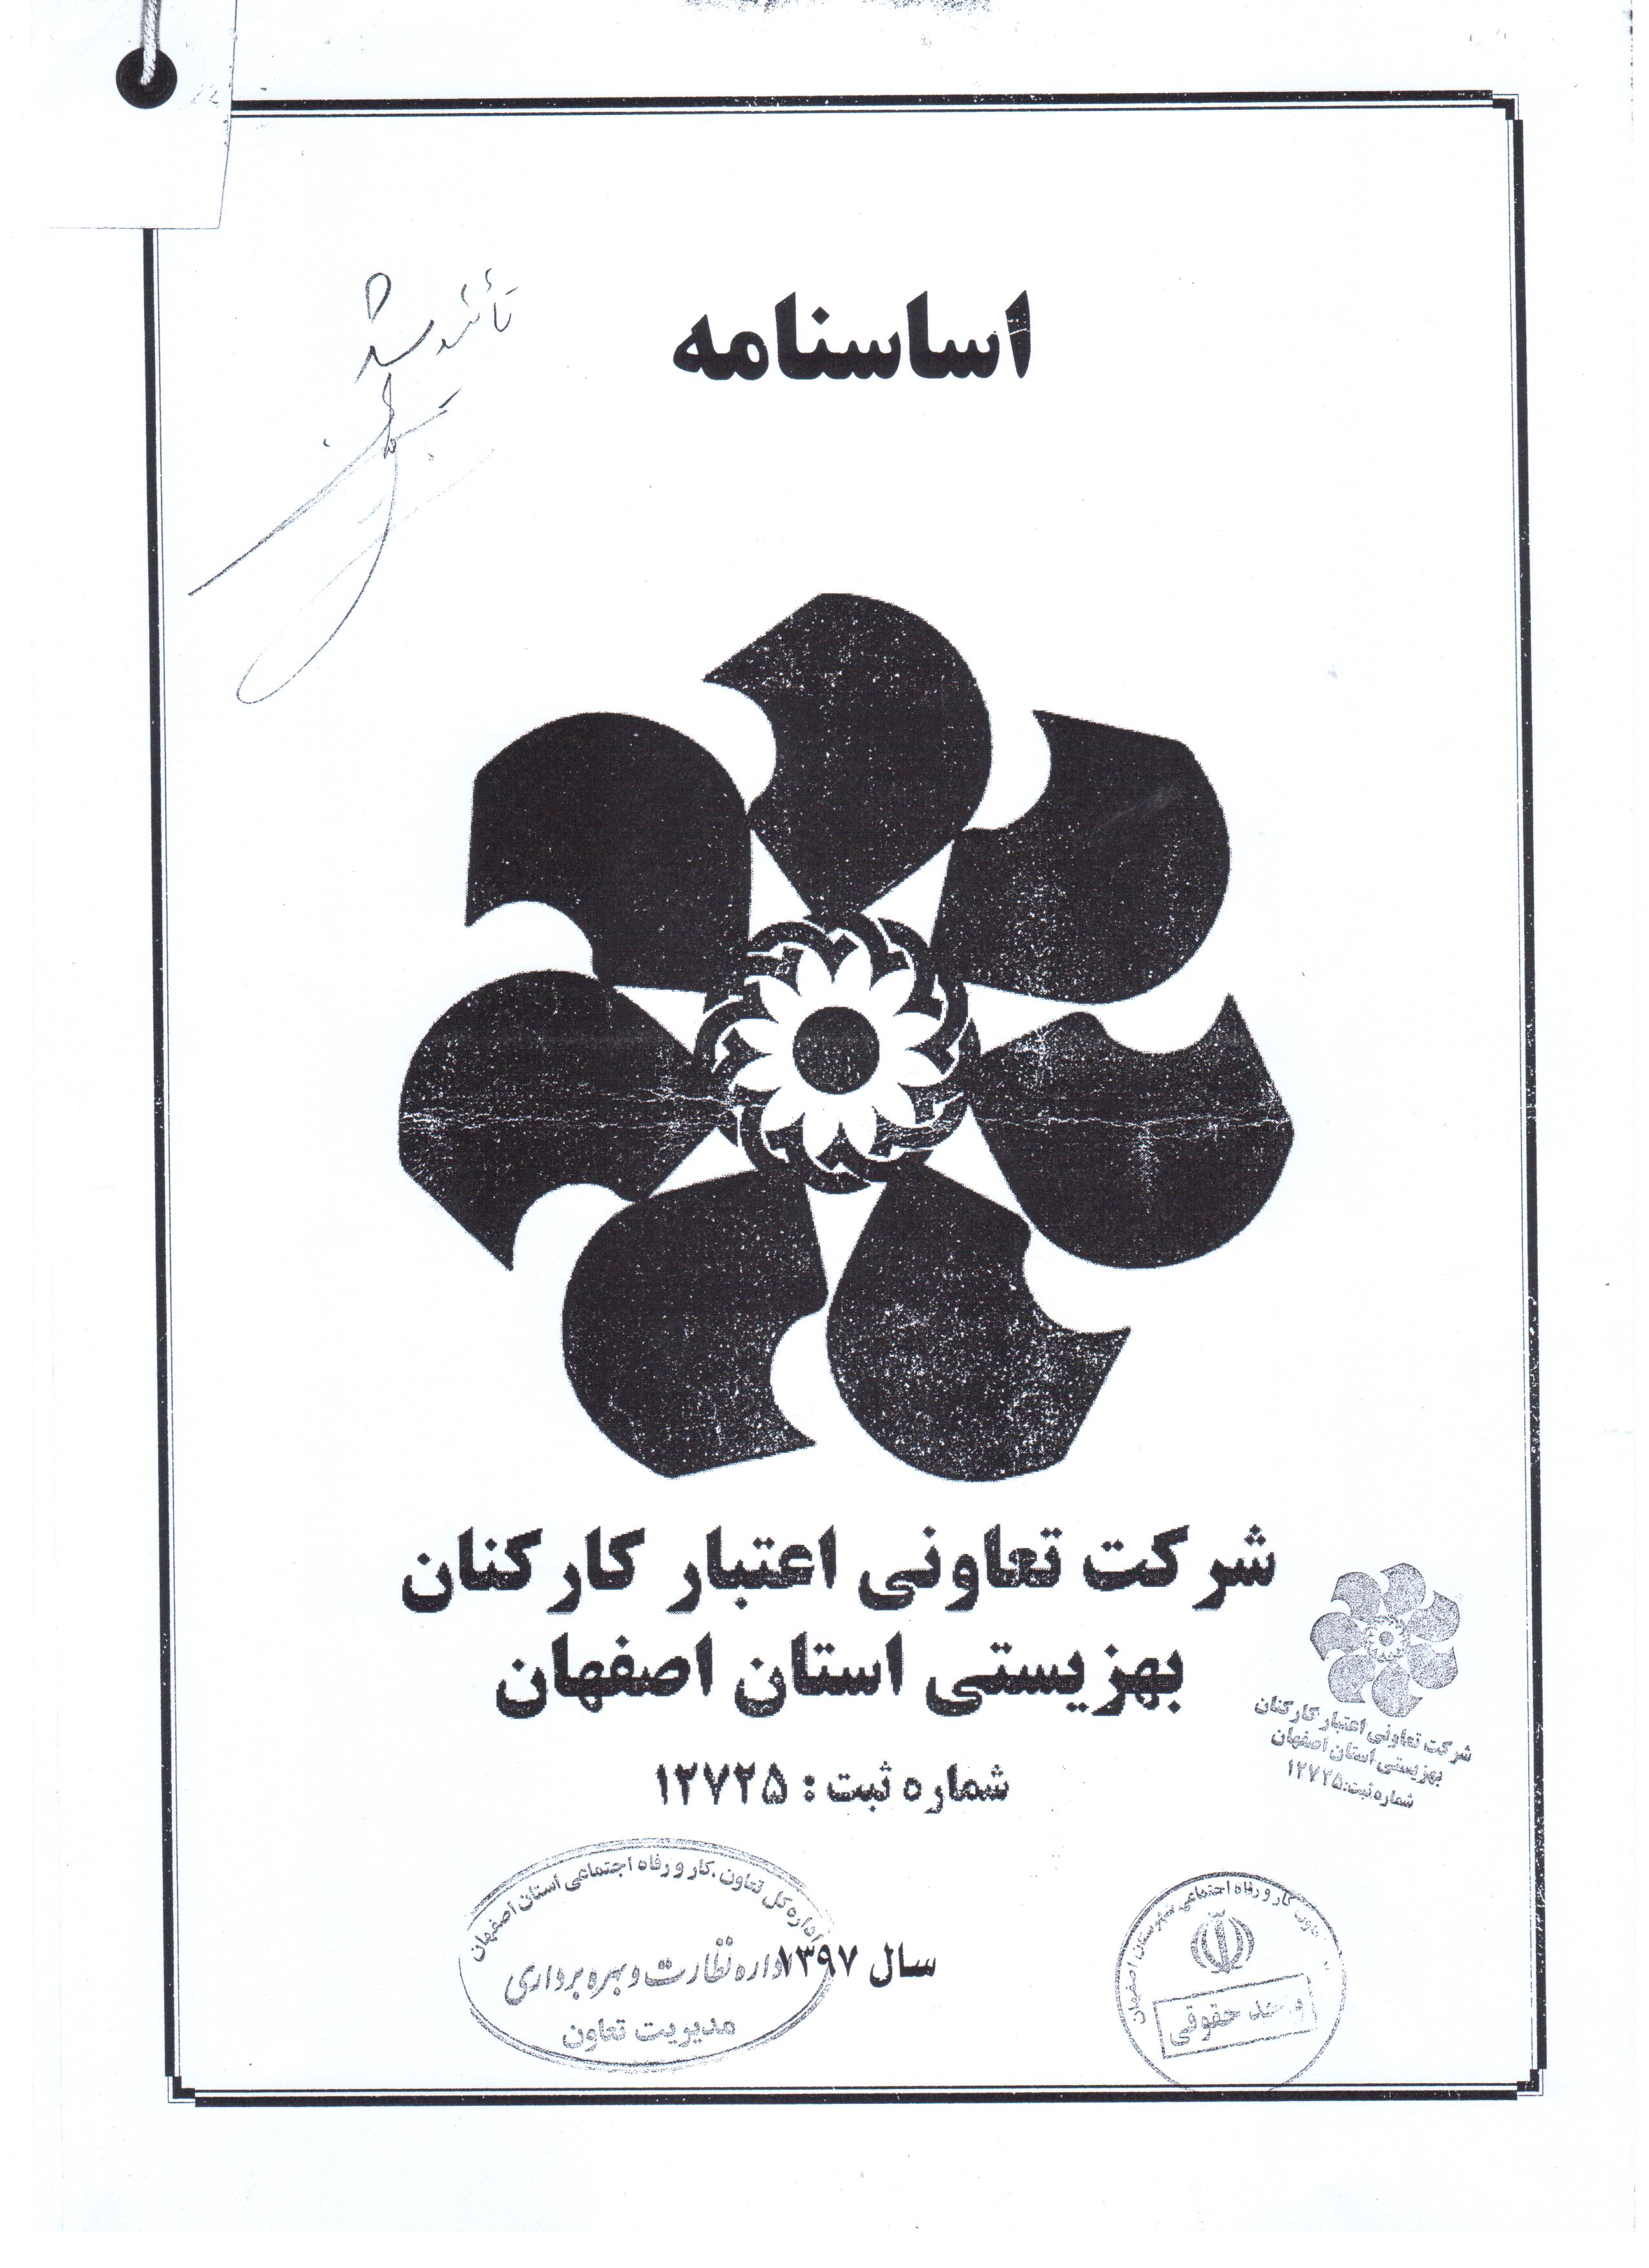 جدیدترین اساسنامه شرکت تعاونی اعتبار کارکنان بهزیستی استان اصفهان (1397)